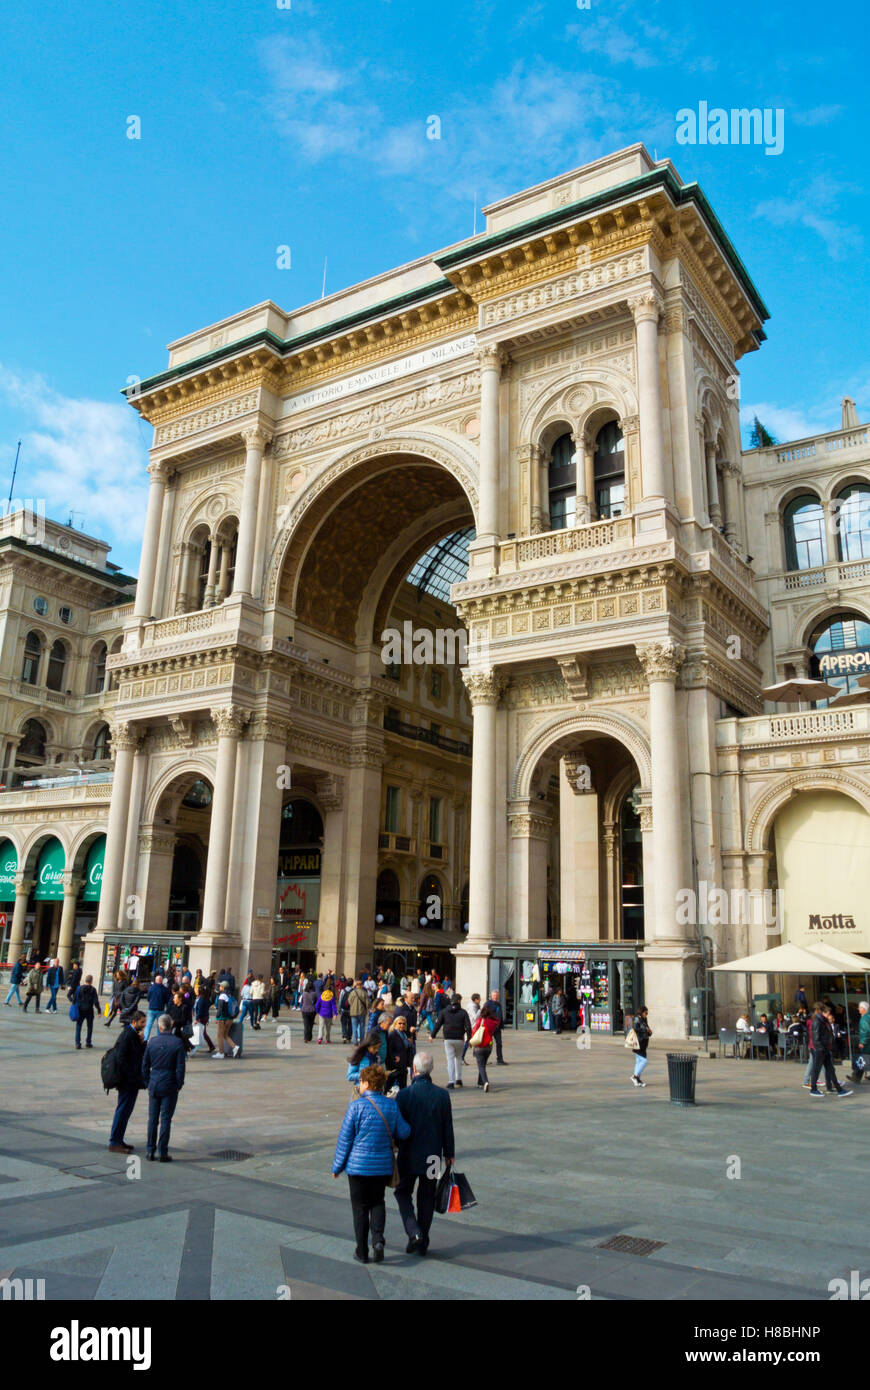 La Piazza del Duomo, avec façade de la galerie Vittorio Emanuele II, Milan, Lombardie, Italie Banque D'Images